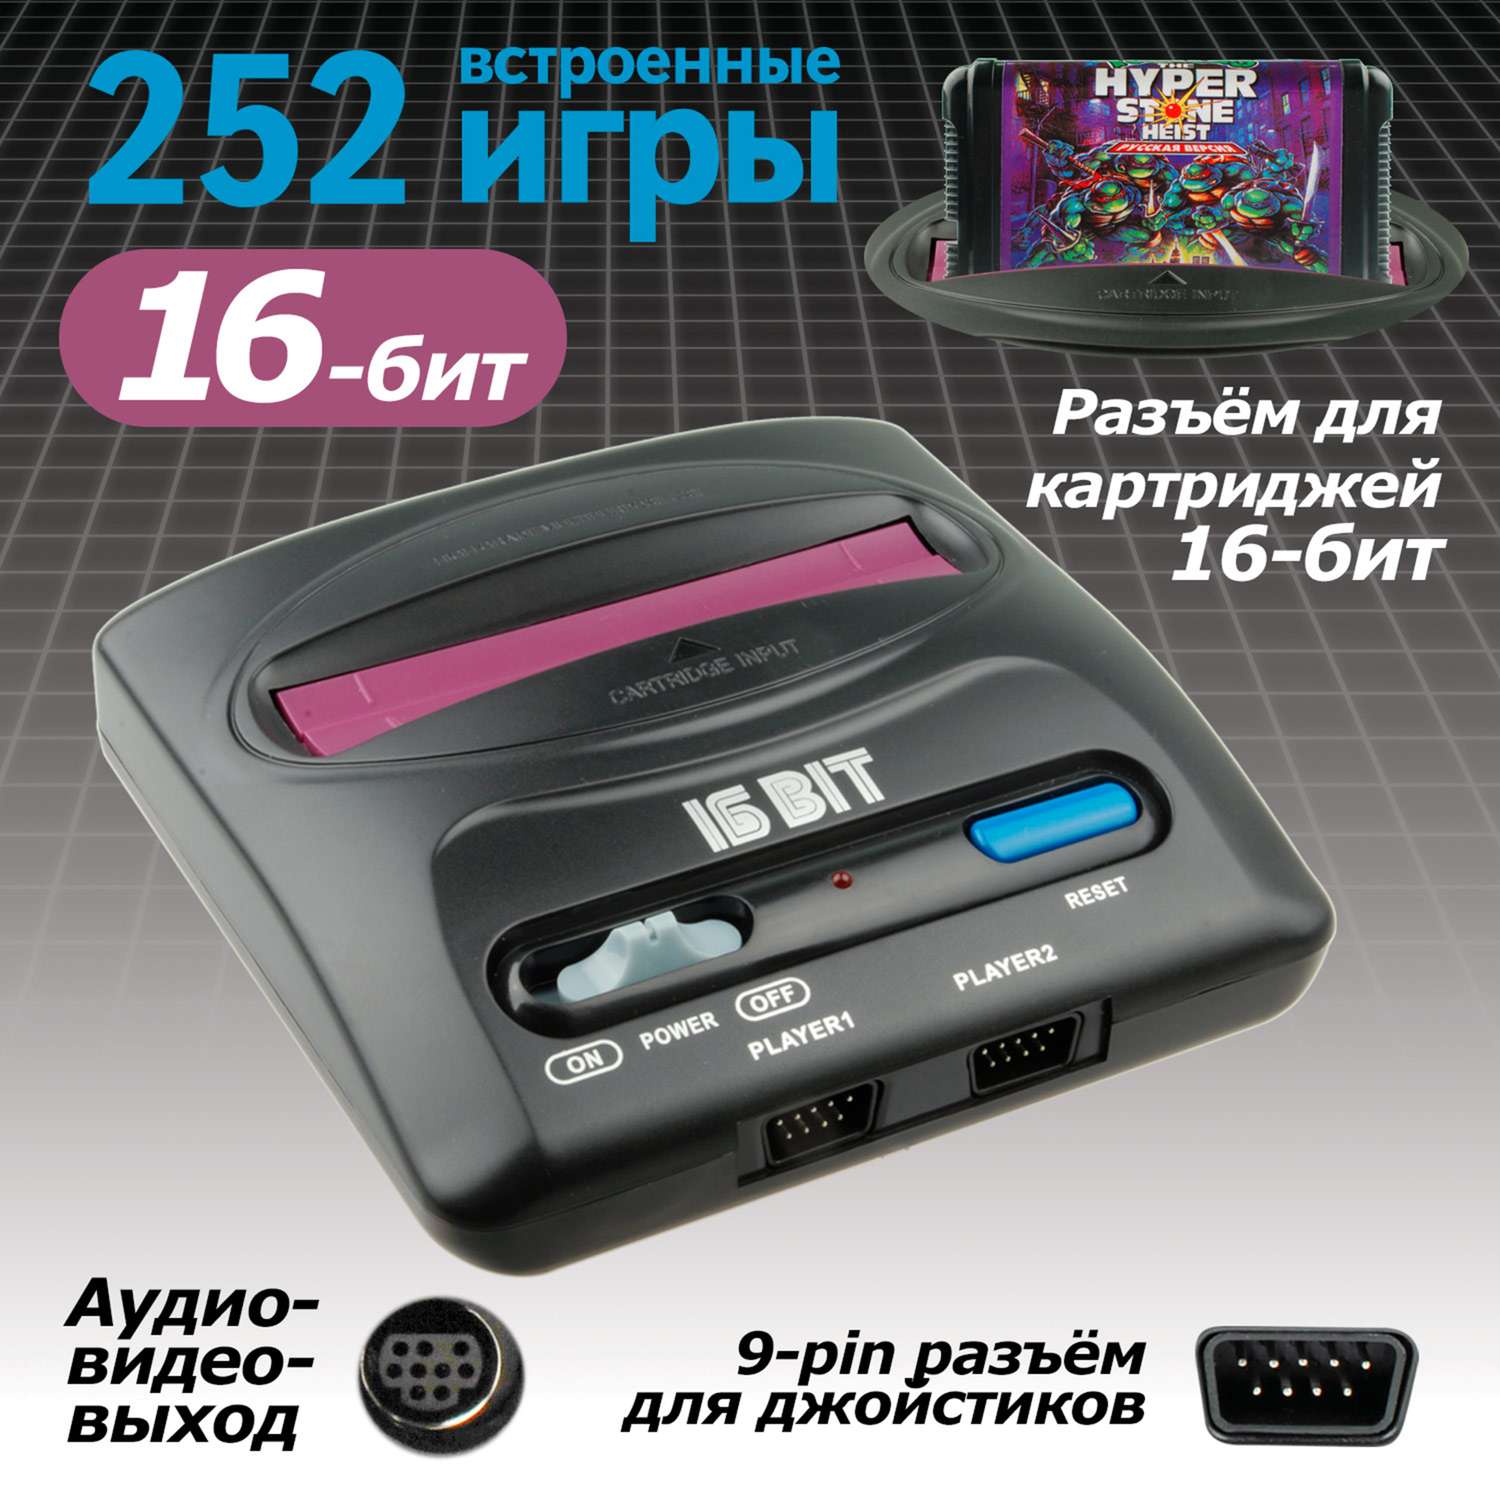 Игровая приставка SEGA Magistr Drive 2 lit 252 игры 16-бит - фото 2